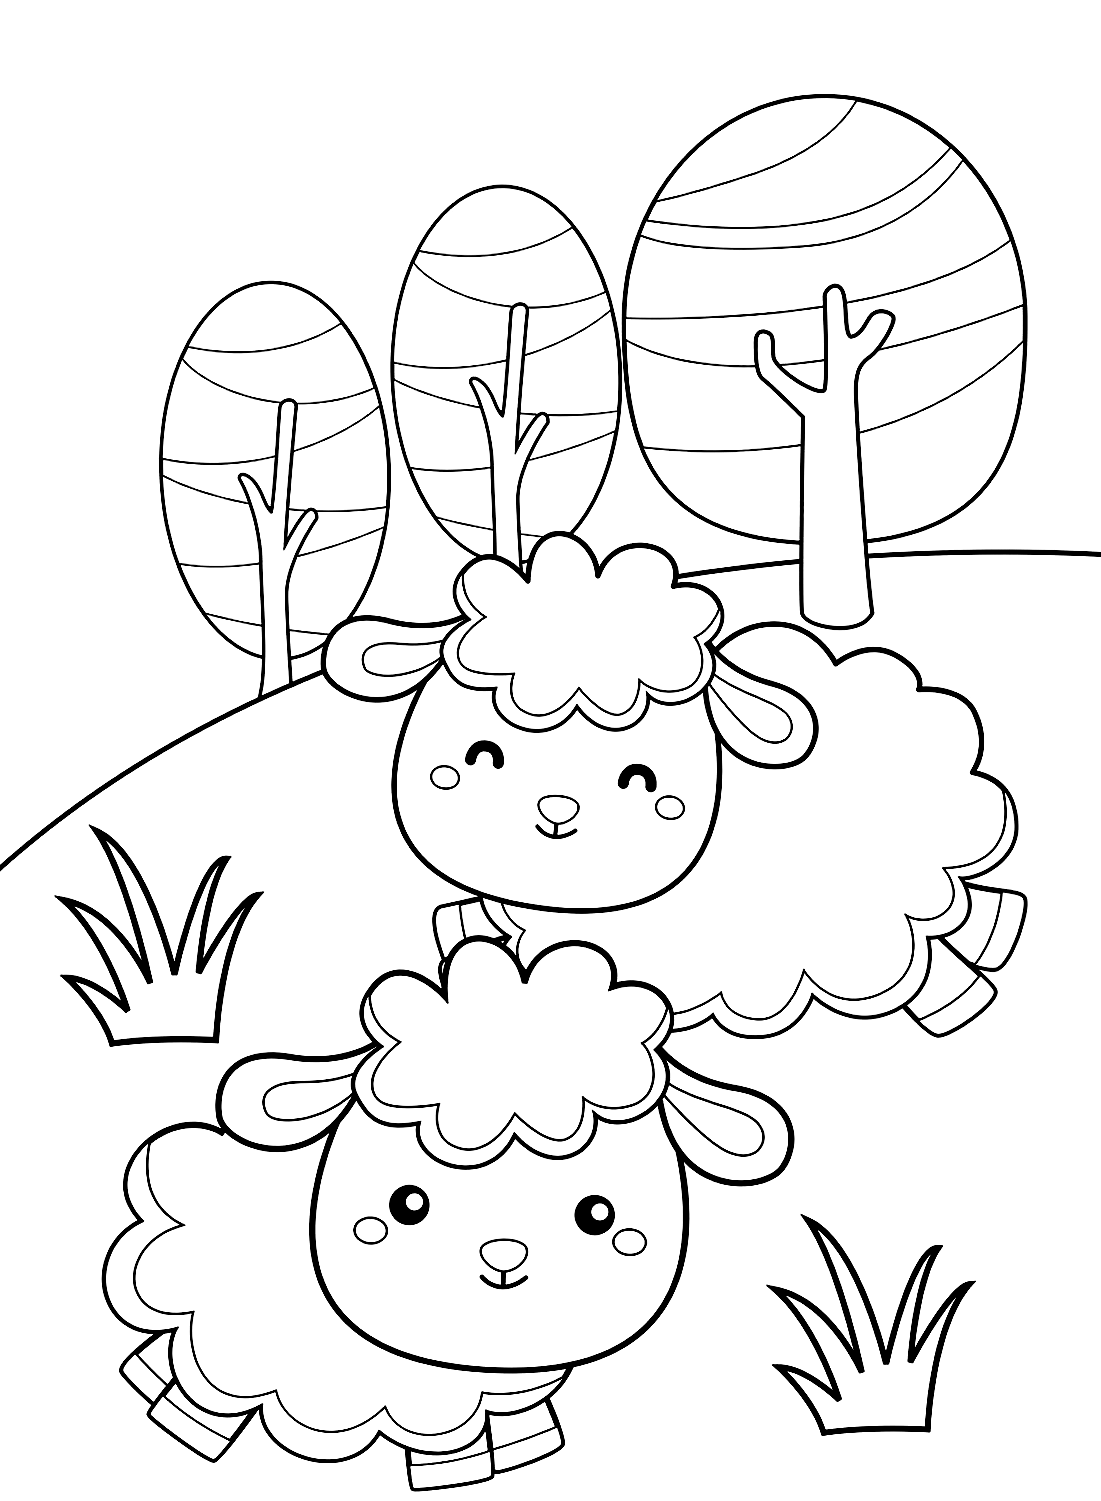 The Fun Sheep Page